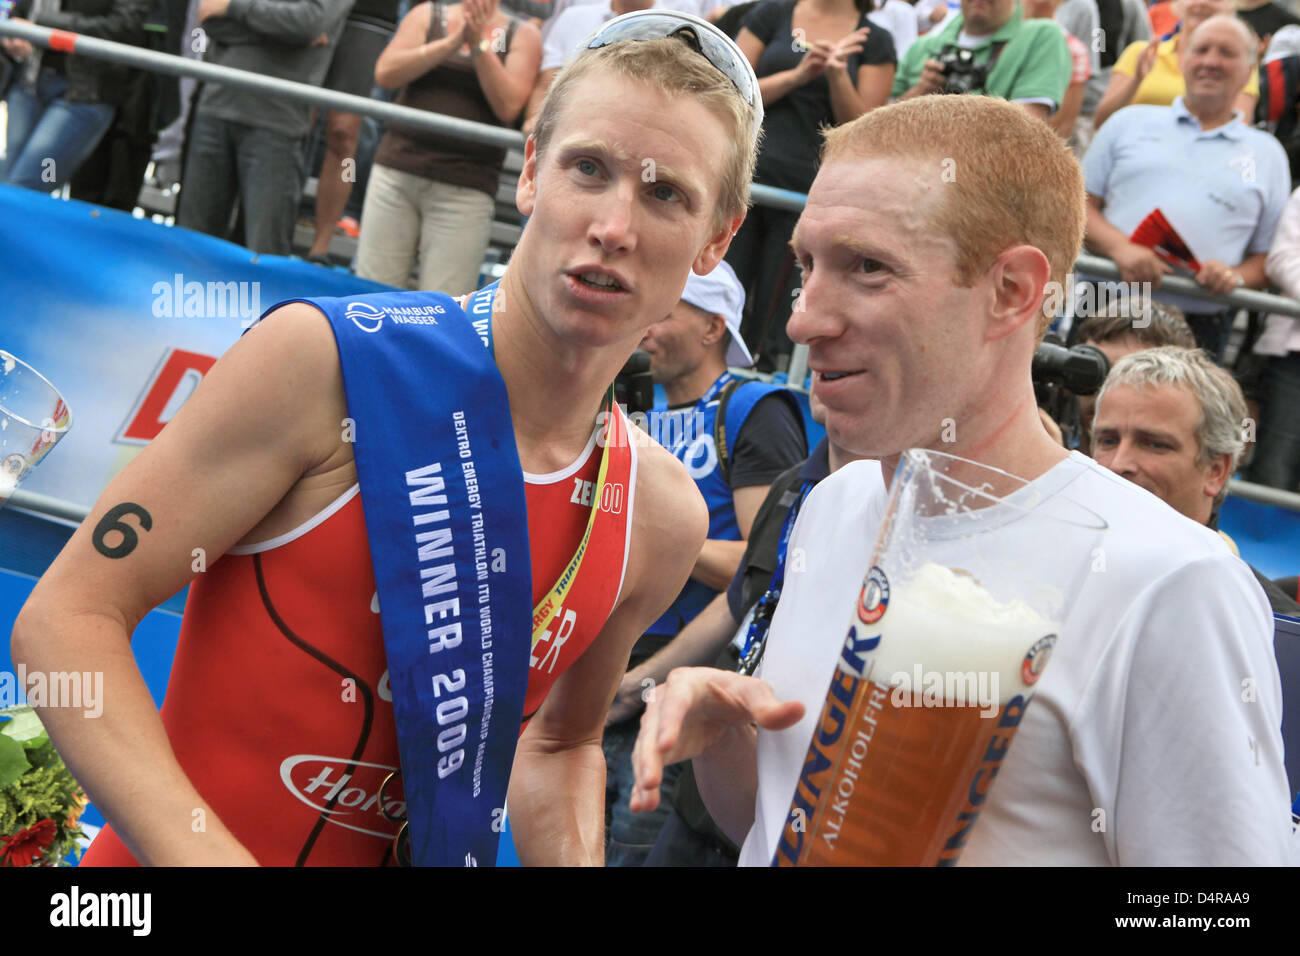 Noi vincitore Jarrod Shoemaker (L) condivide una birra con il suo connazionale Mark Fretta (R) presso l'ITU World Championship Series caso ad Amburgo, Germania, 26 luglio 2009. Foto: Bodo segna Foto Stock